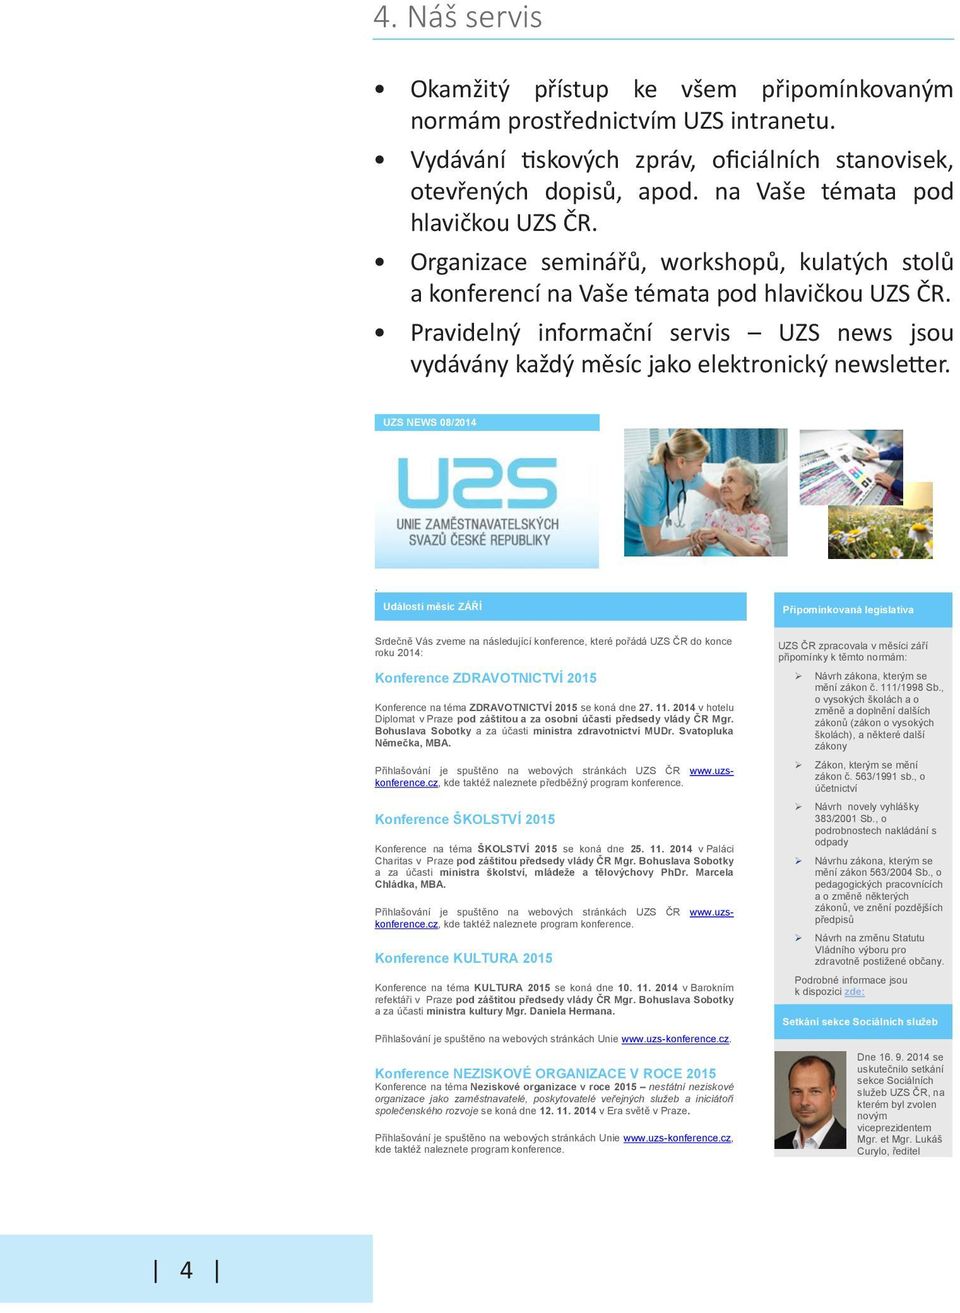 Pravidelný informační servis UZS news jsou vydávány každý měsíc jako elektronický newsletter. ZÁŘÍ 2014 UZS NEWS 08/2014.